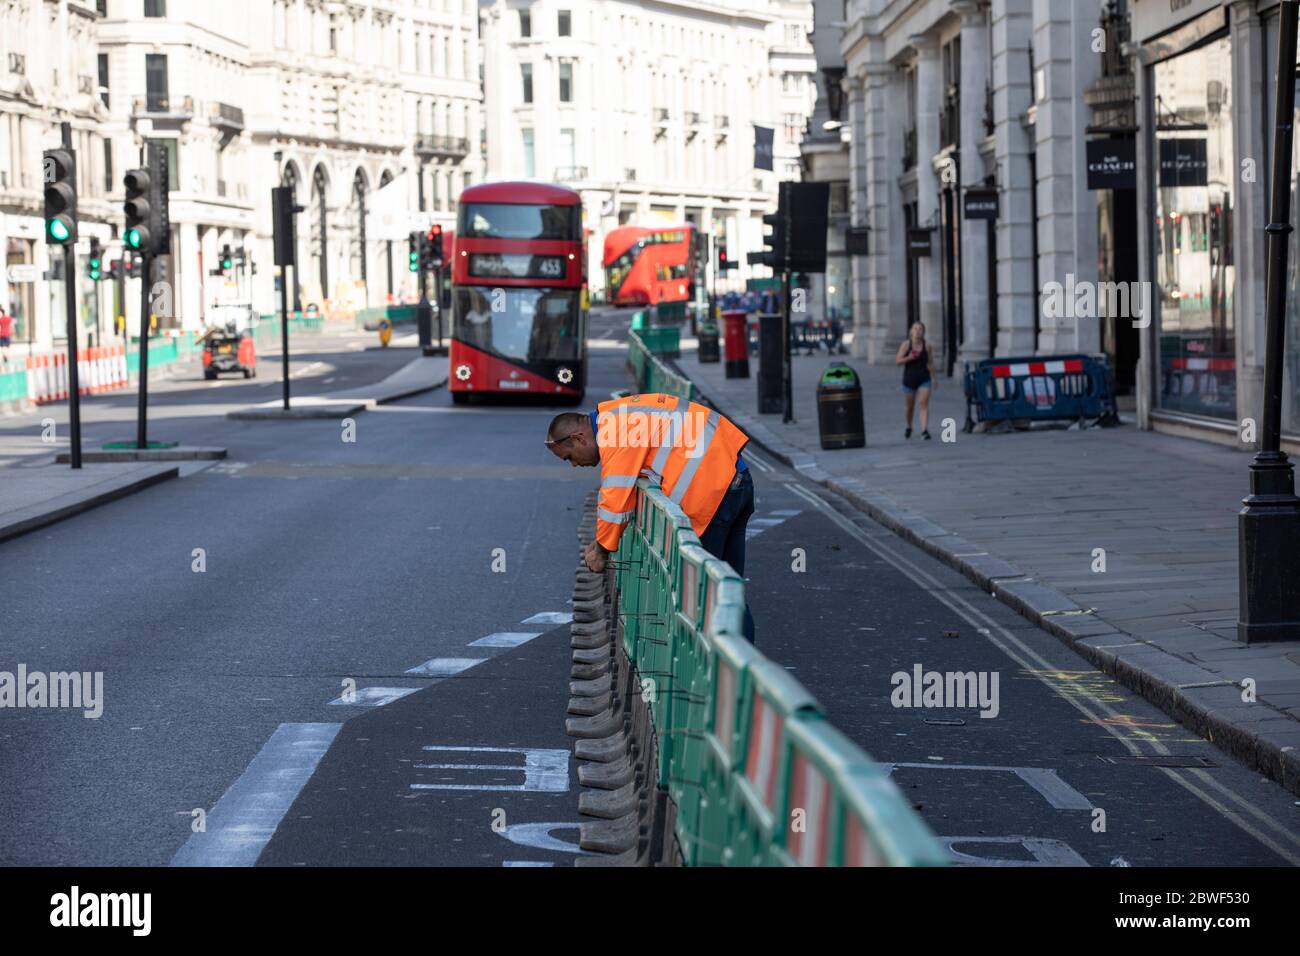 Las pavimentos de Regent Street se amplían para los peatones a distancia social, ya que las calles altas se preparan para reabrirse después del cierre del coronavirus, Londres, Reino Unido Foto de stock